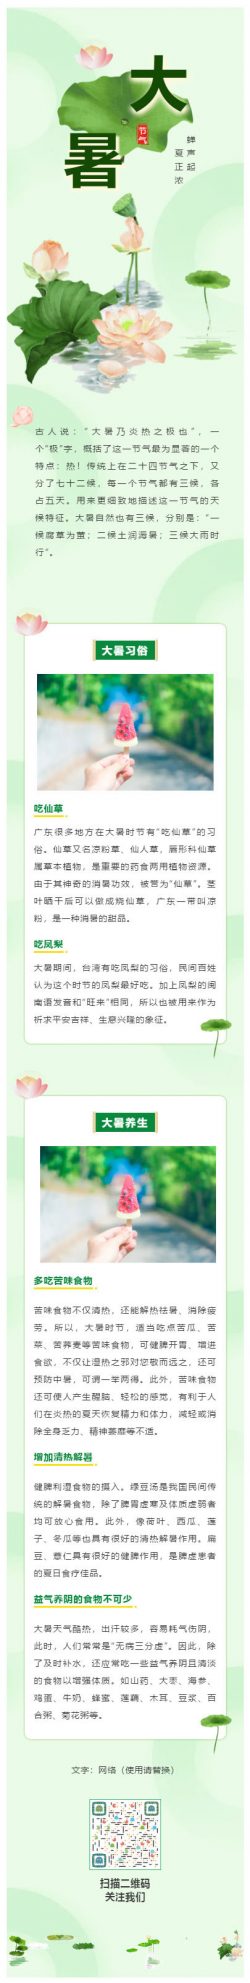 中国传统节日二十四节气之大暑绿色荷花微信公众号推文中国风格模板